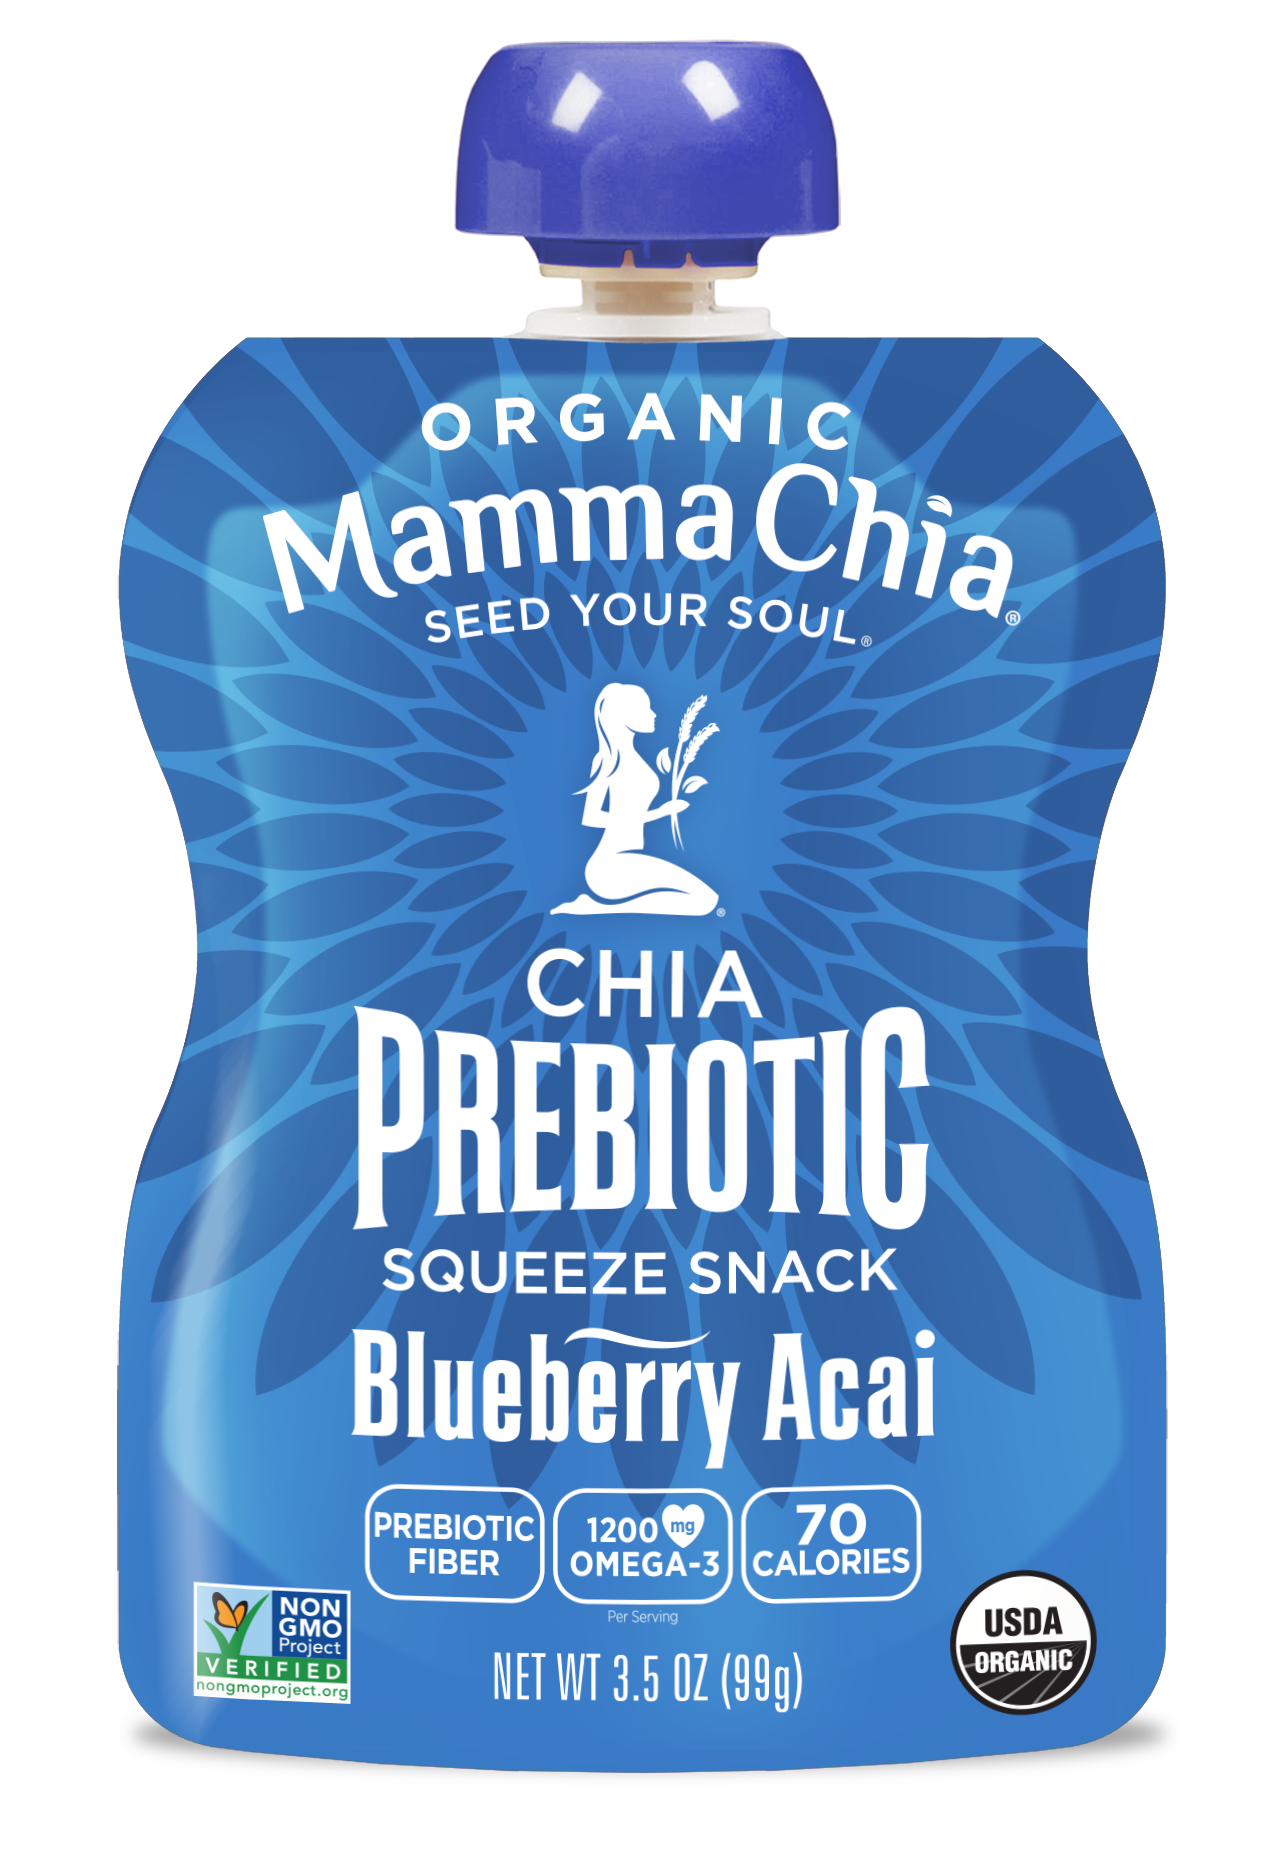 Mamma Chia Blueberry Acai Organic Chia Prebiotic Squeeze 6 innerpacks per case 14.0 oz